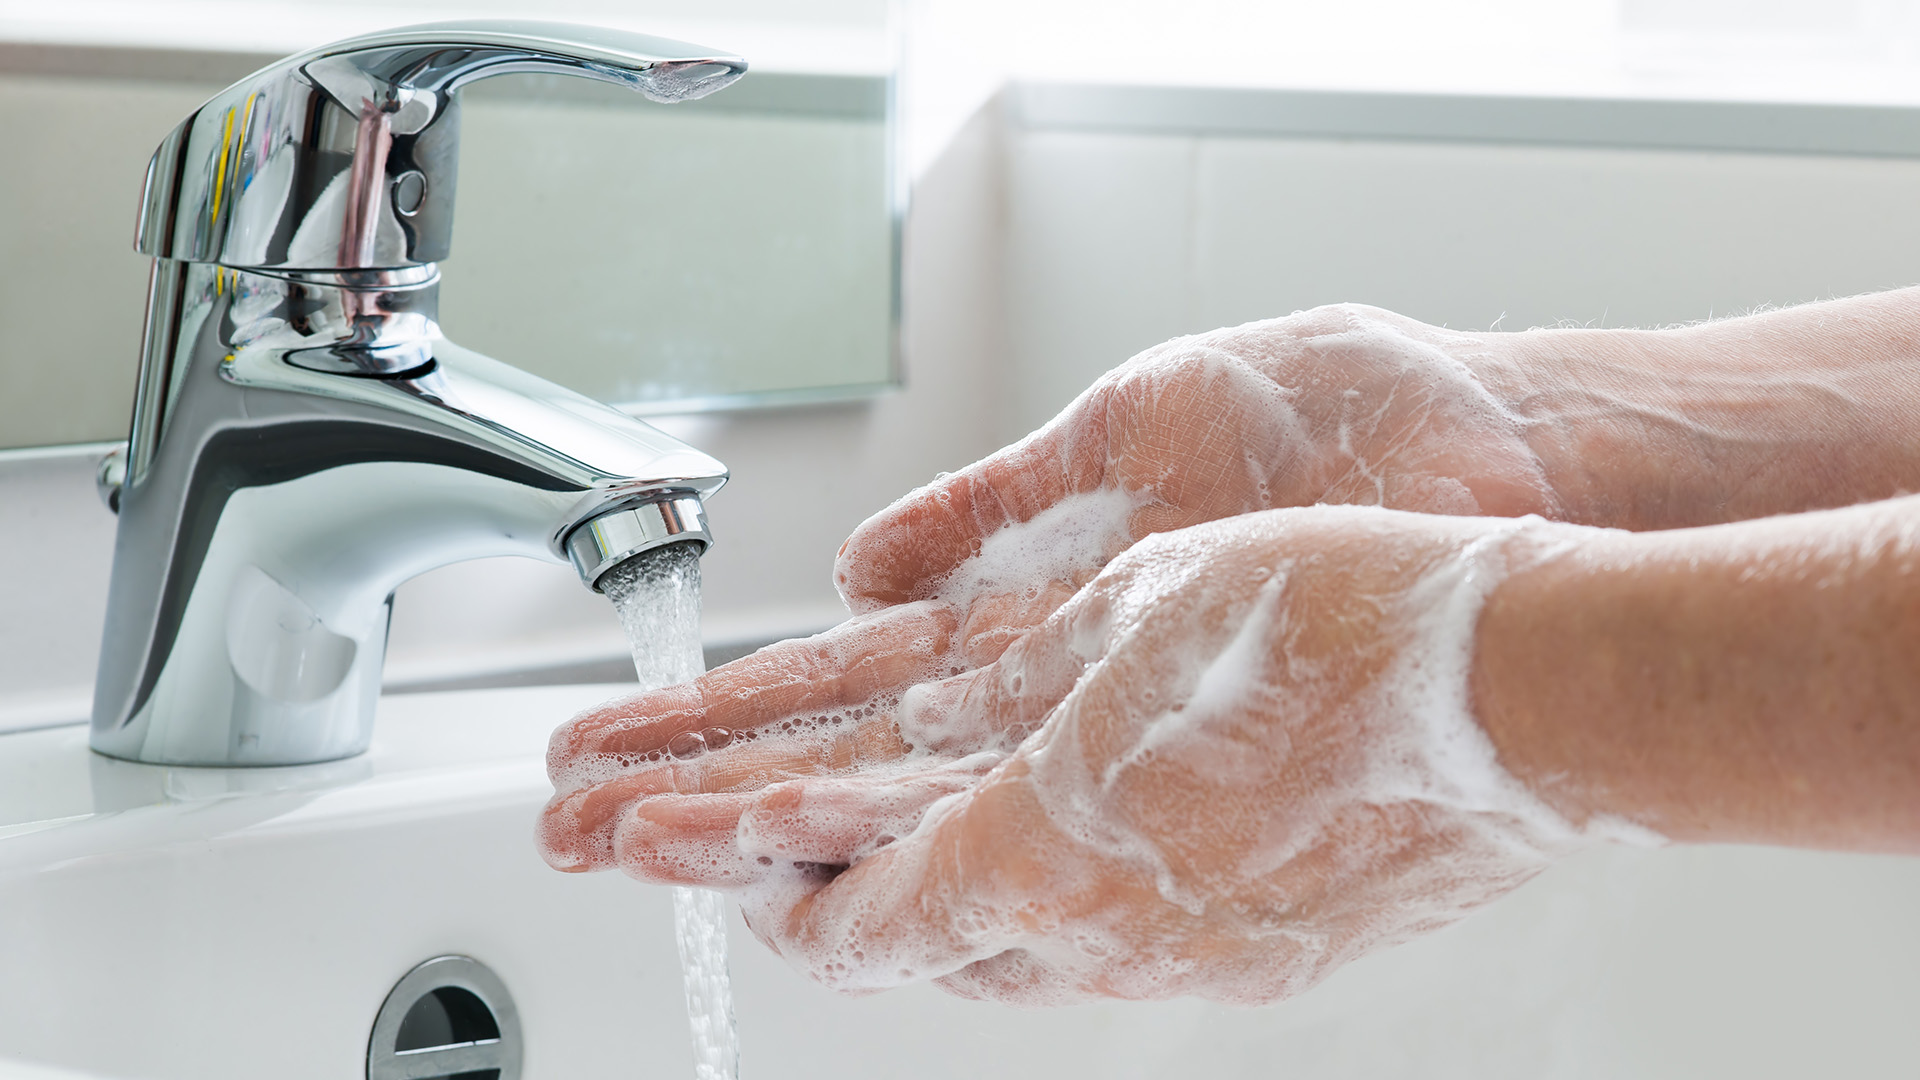 Lavarse las manos frecuentemente con agua y jabón
(Getty Images)